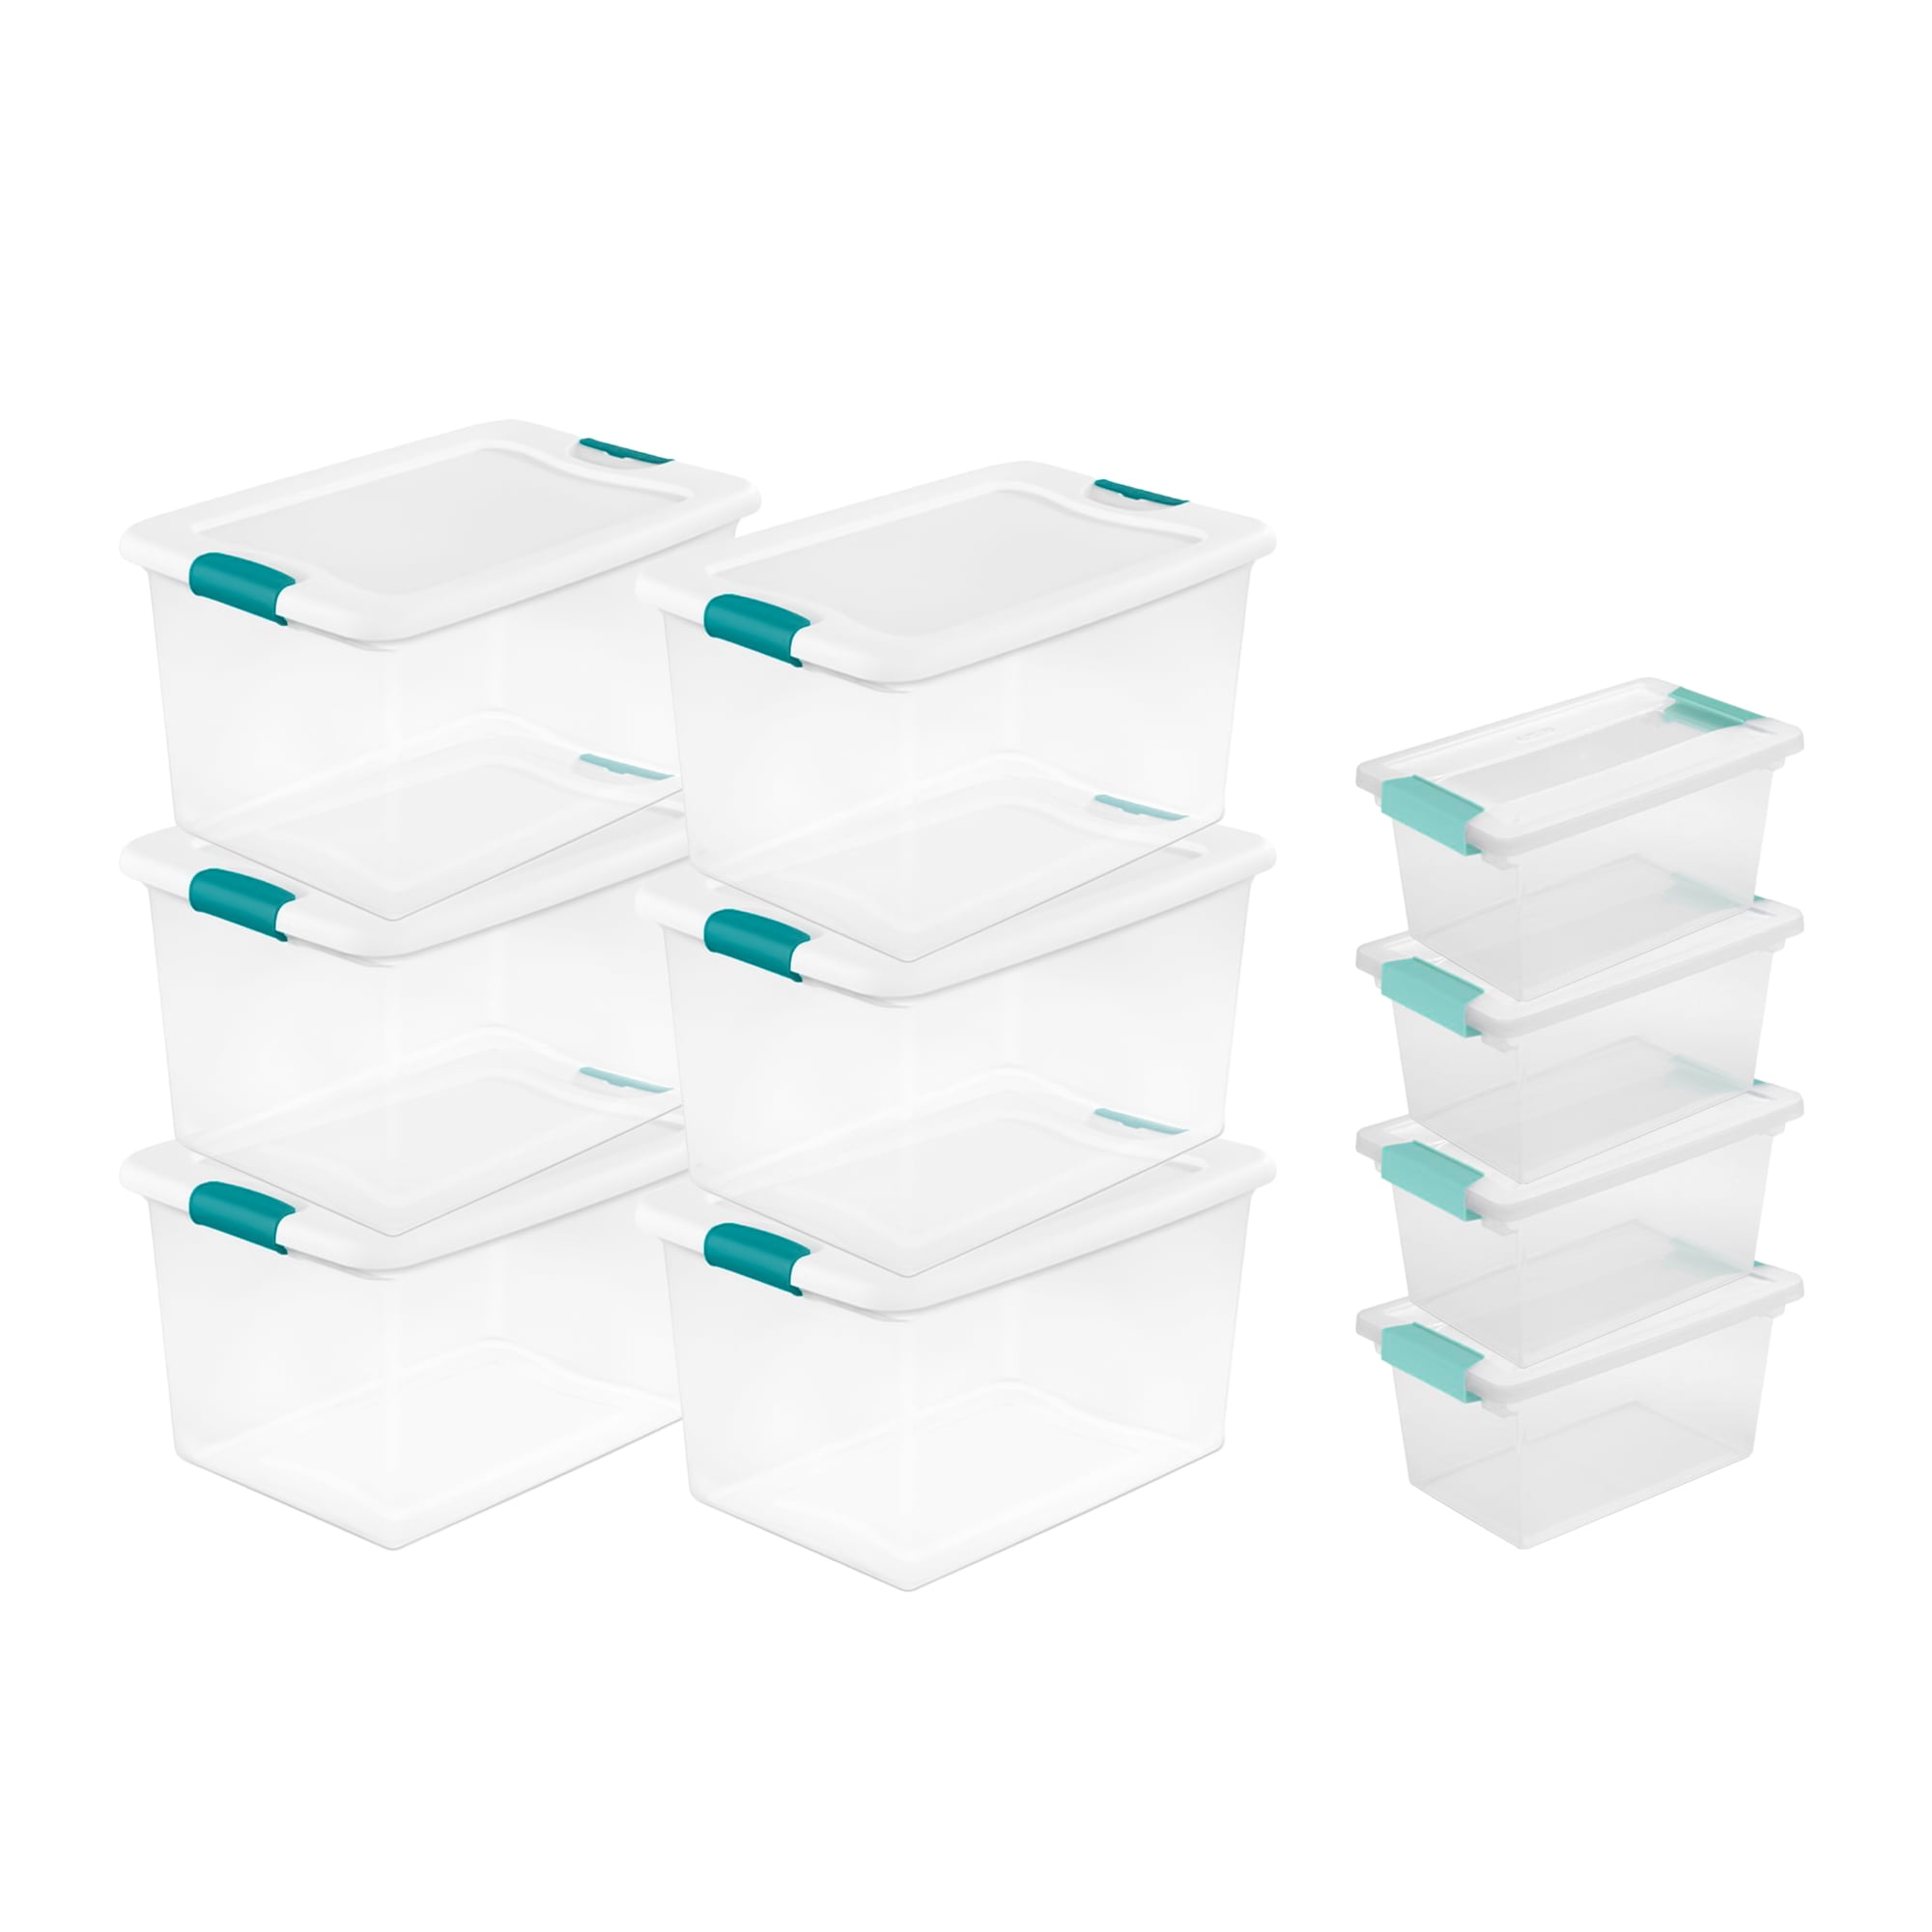 STERILITE Storage Box 13.5 X 8.3 X 4.8, 6 Qt. Clear - Pack of